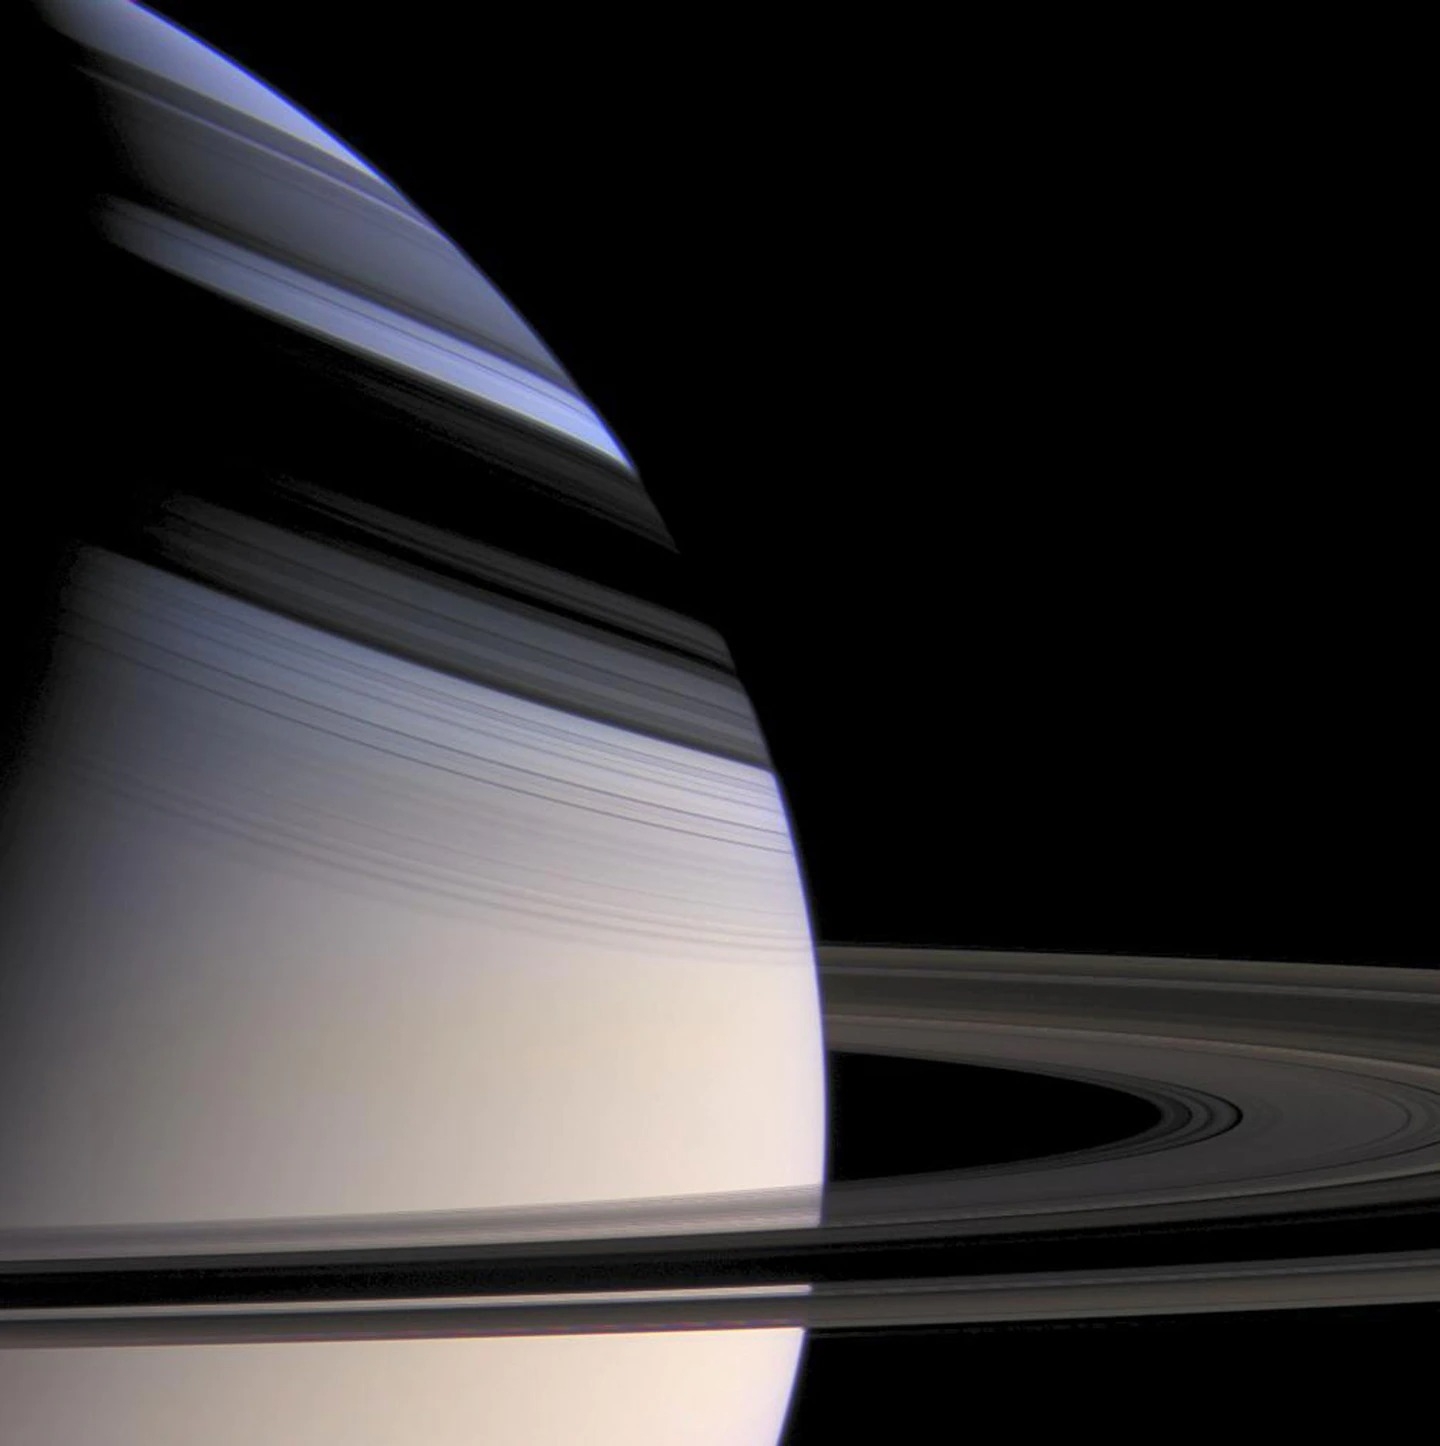 科學家觀察土星環中的波紋，藉此測量土星核心的大小和形狀，他們發現土星核心比我們所想像的要更大也更奇怪。PHOTOGRAPH BY NASA, JPL